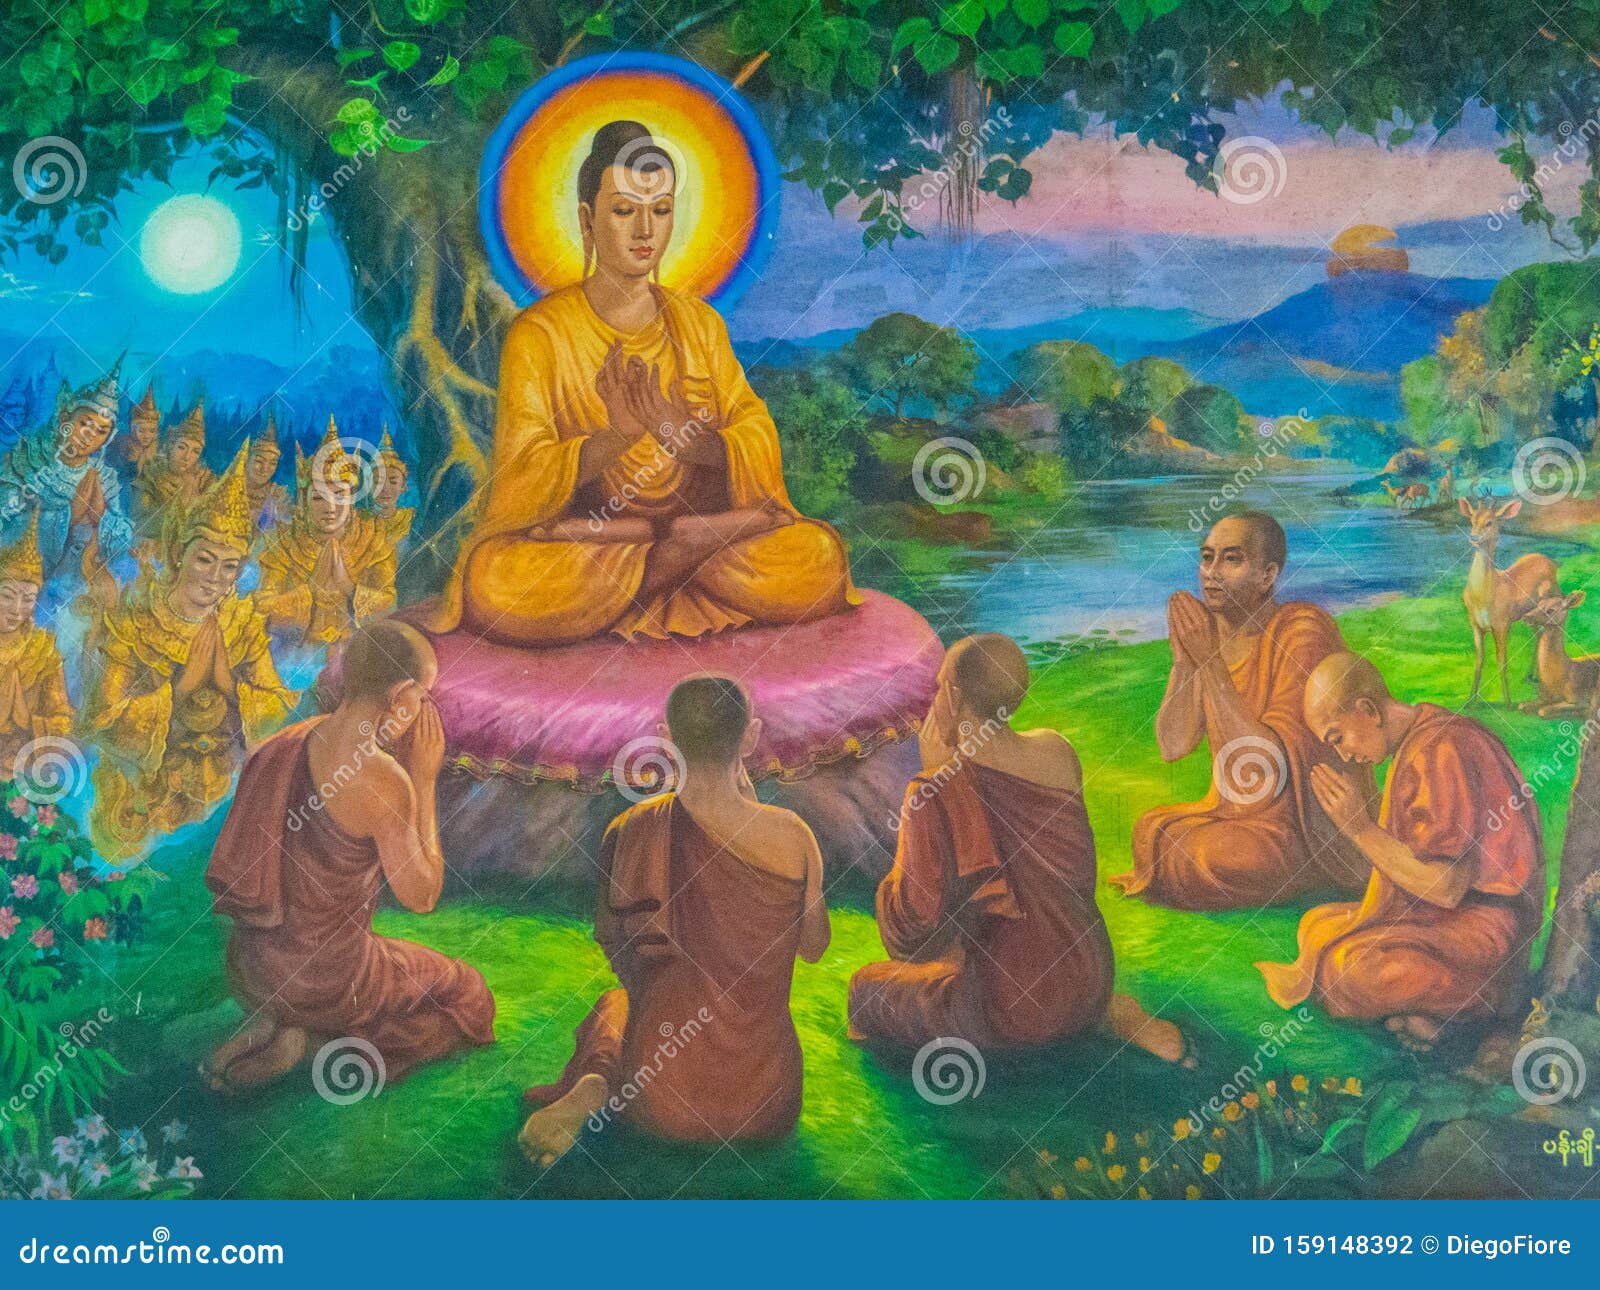 Проповедь будды. Будда живопись Тхеравада. Будда Шакьямуни. Будда Шакьямуни с учениками. Будда Шакьямуни фото.